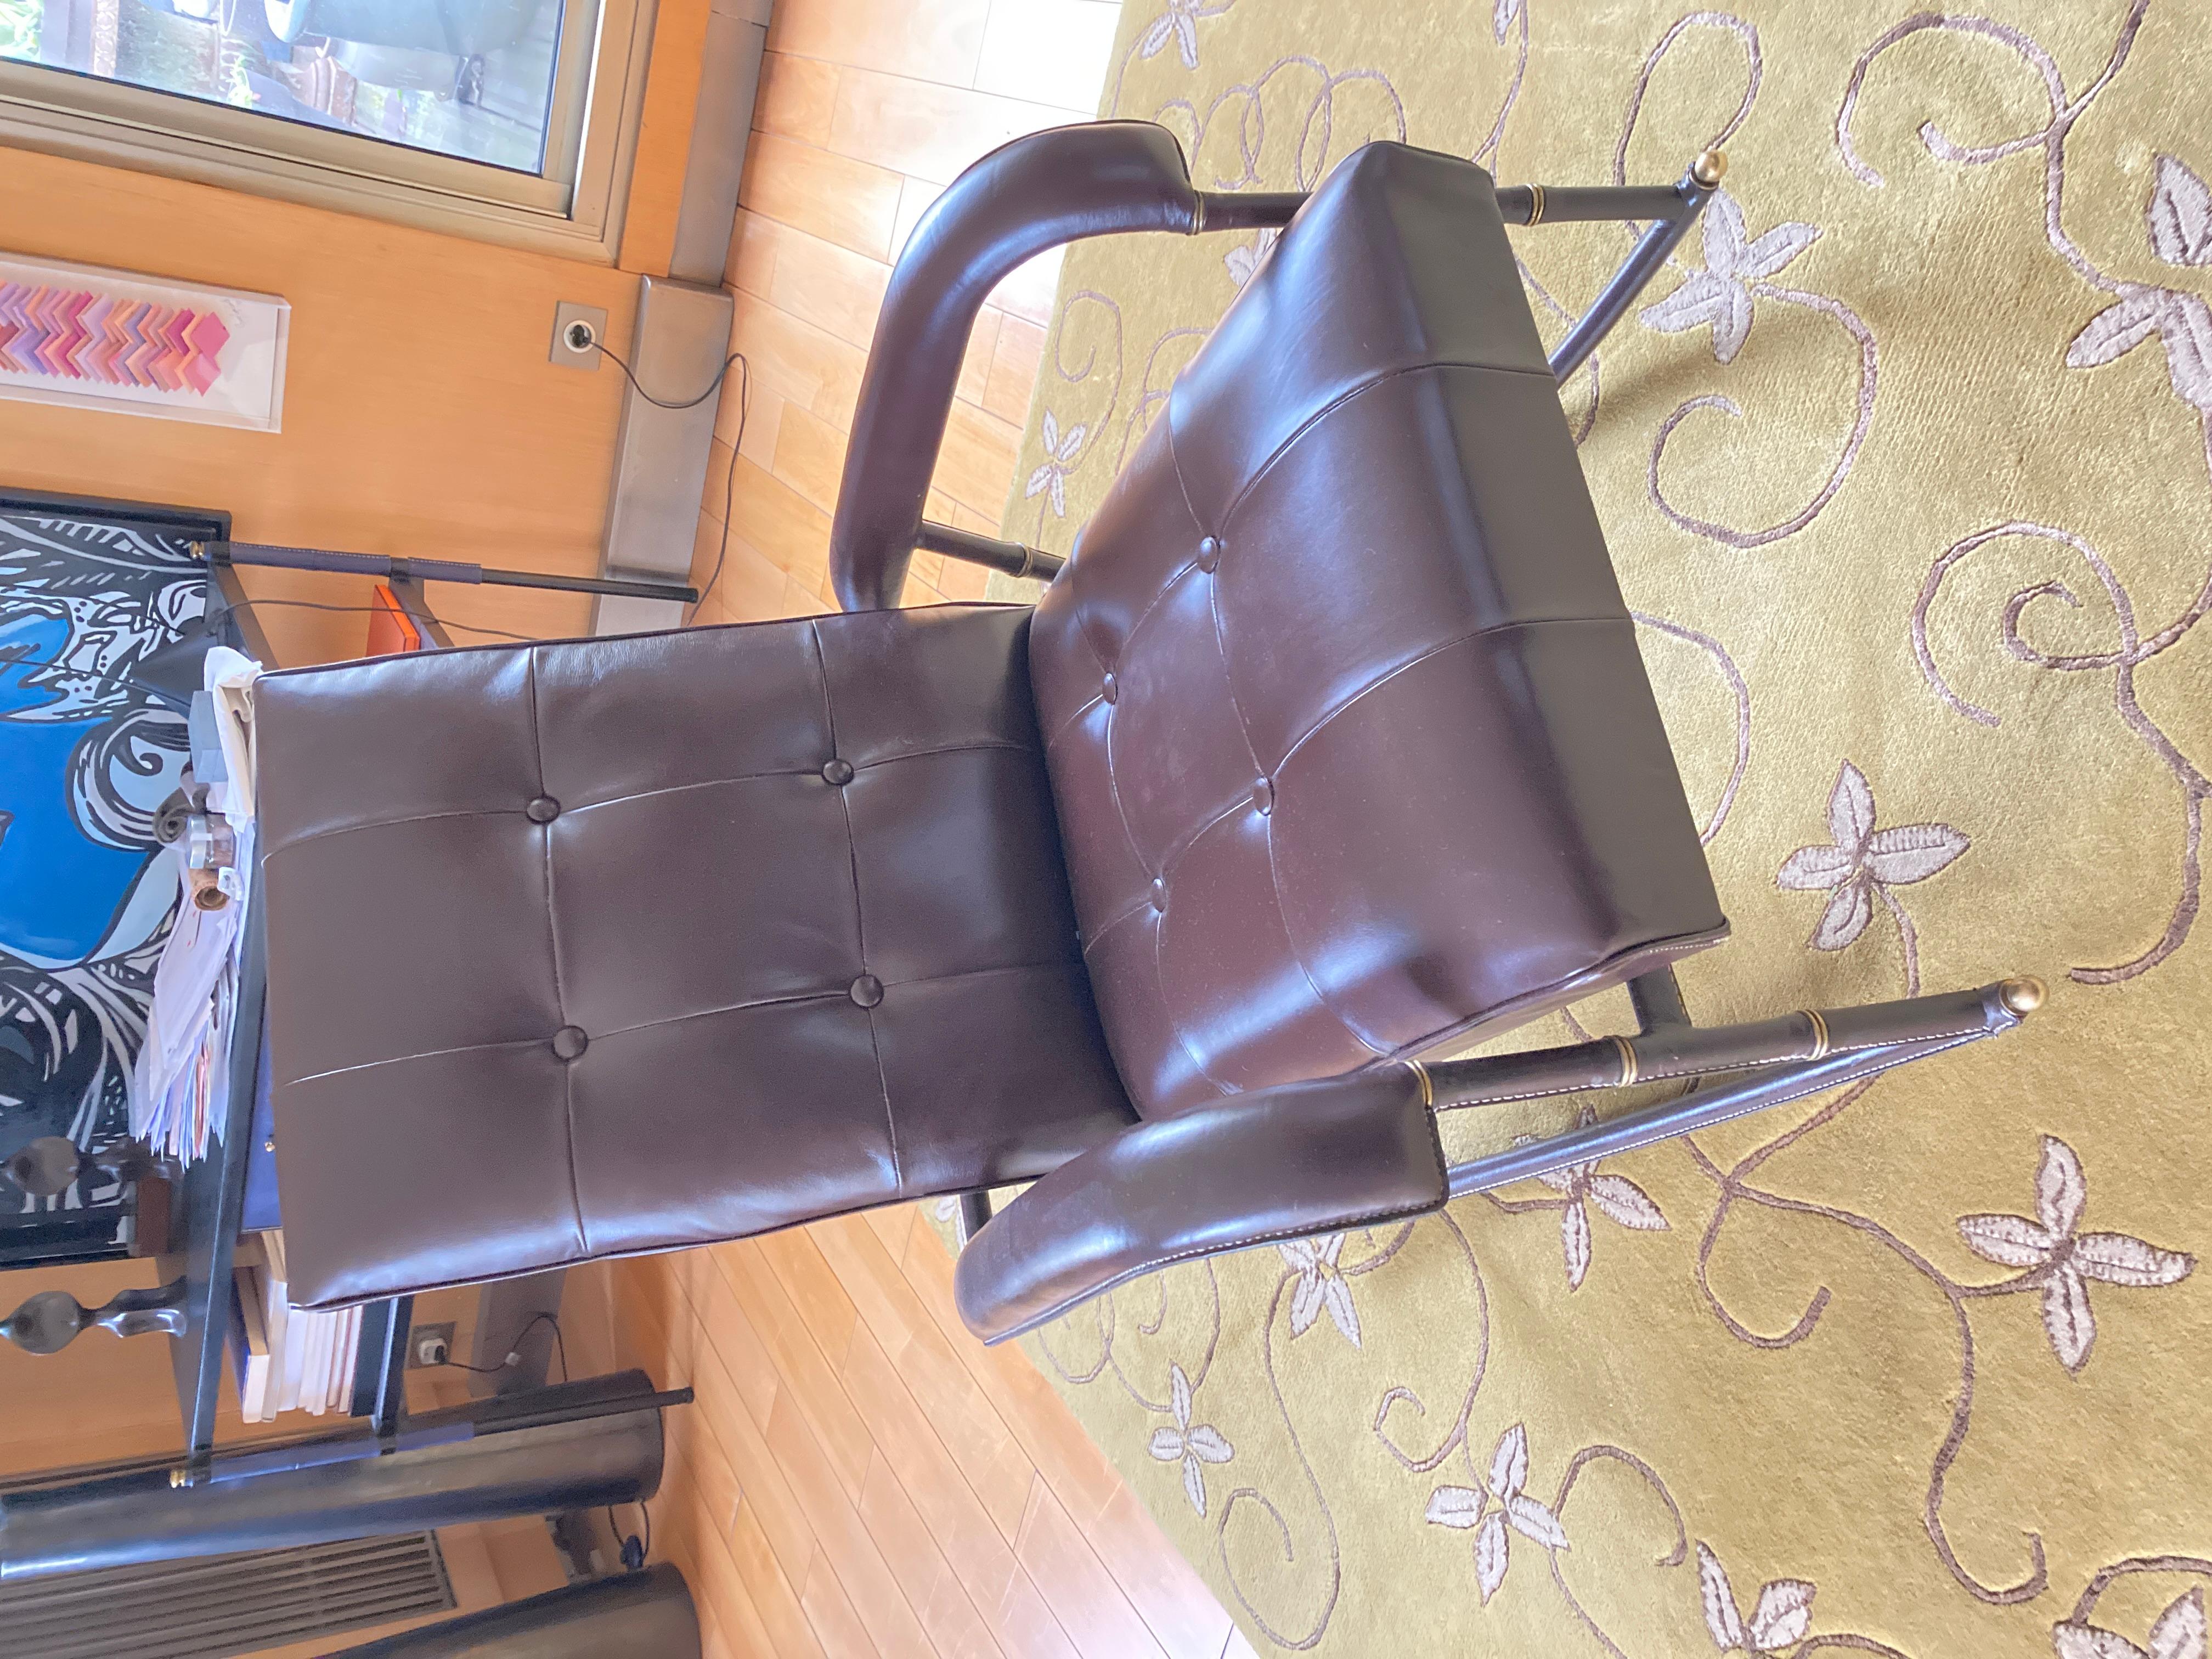 Rocking-chair en cuir cousu des années 1950 conçu par Jacques Adnet
Belle couleur brun chocolat 
France